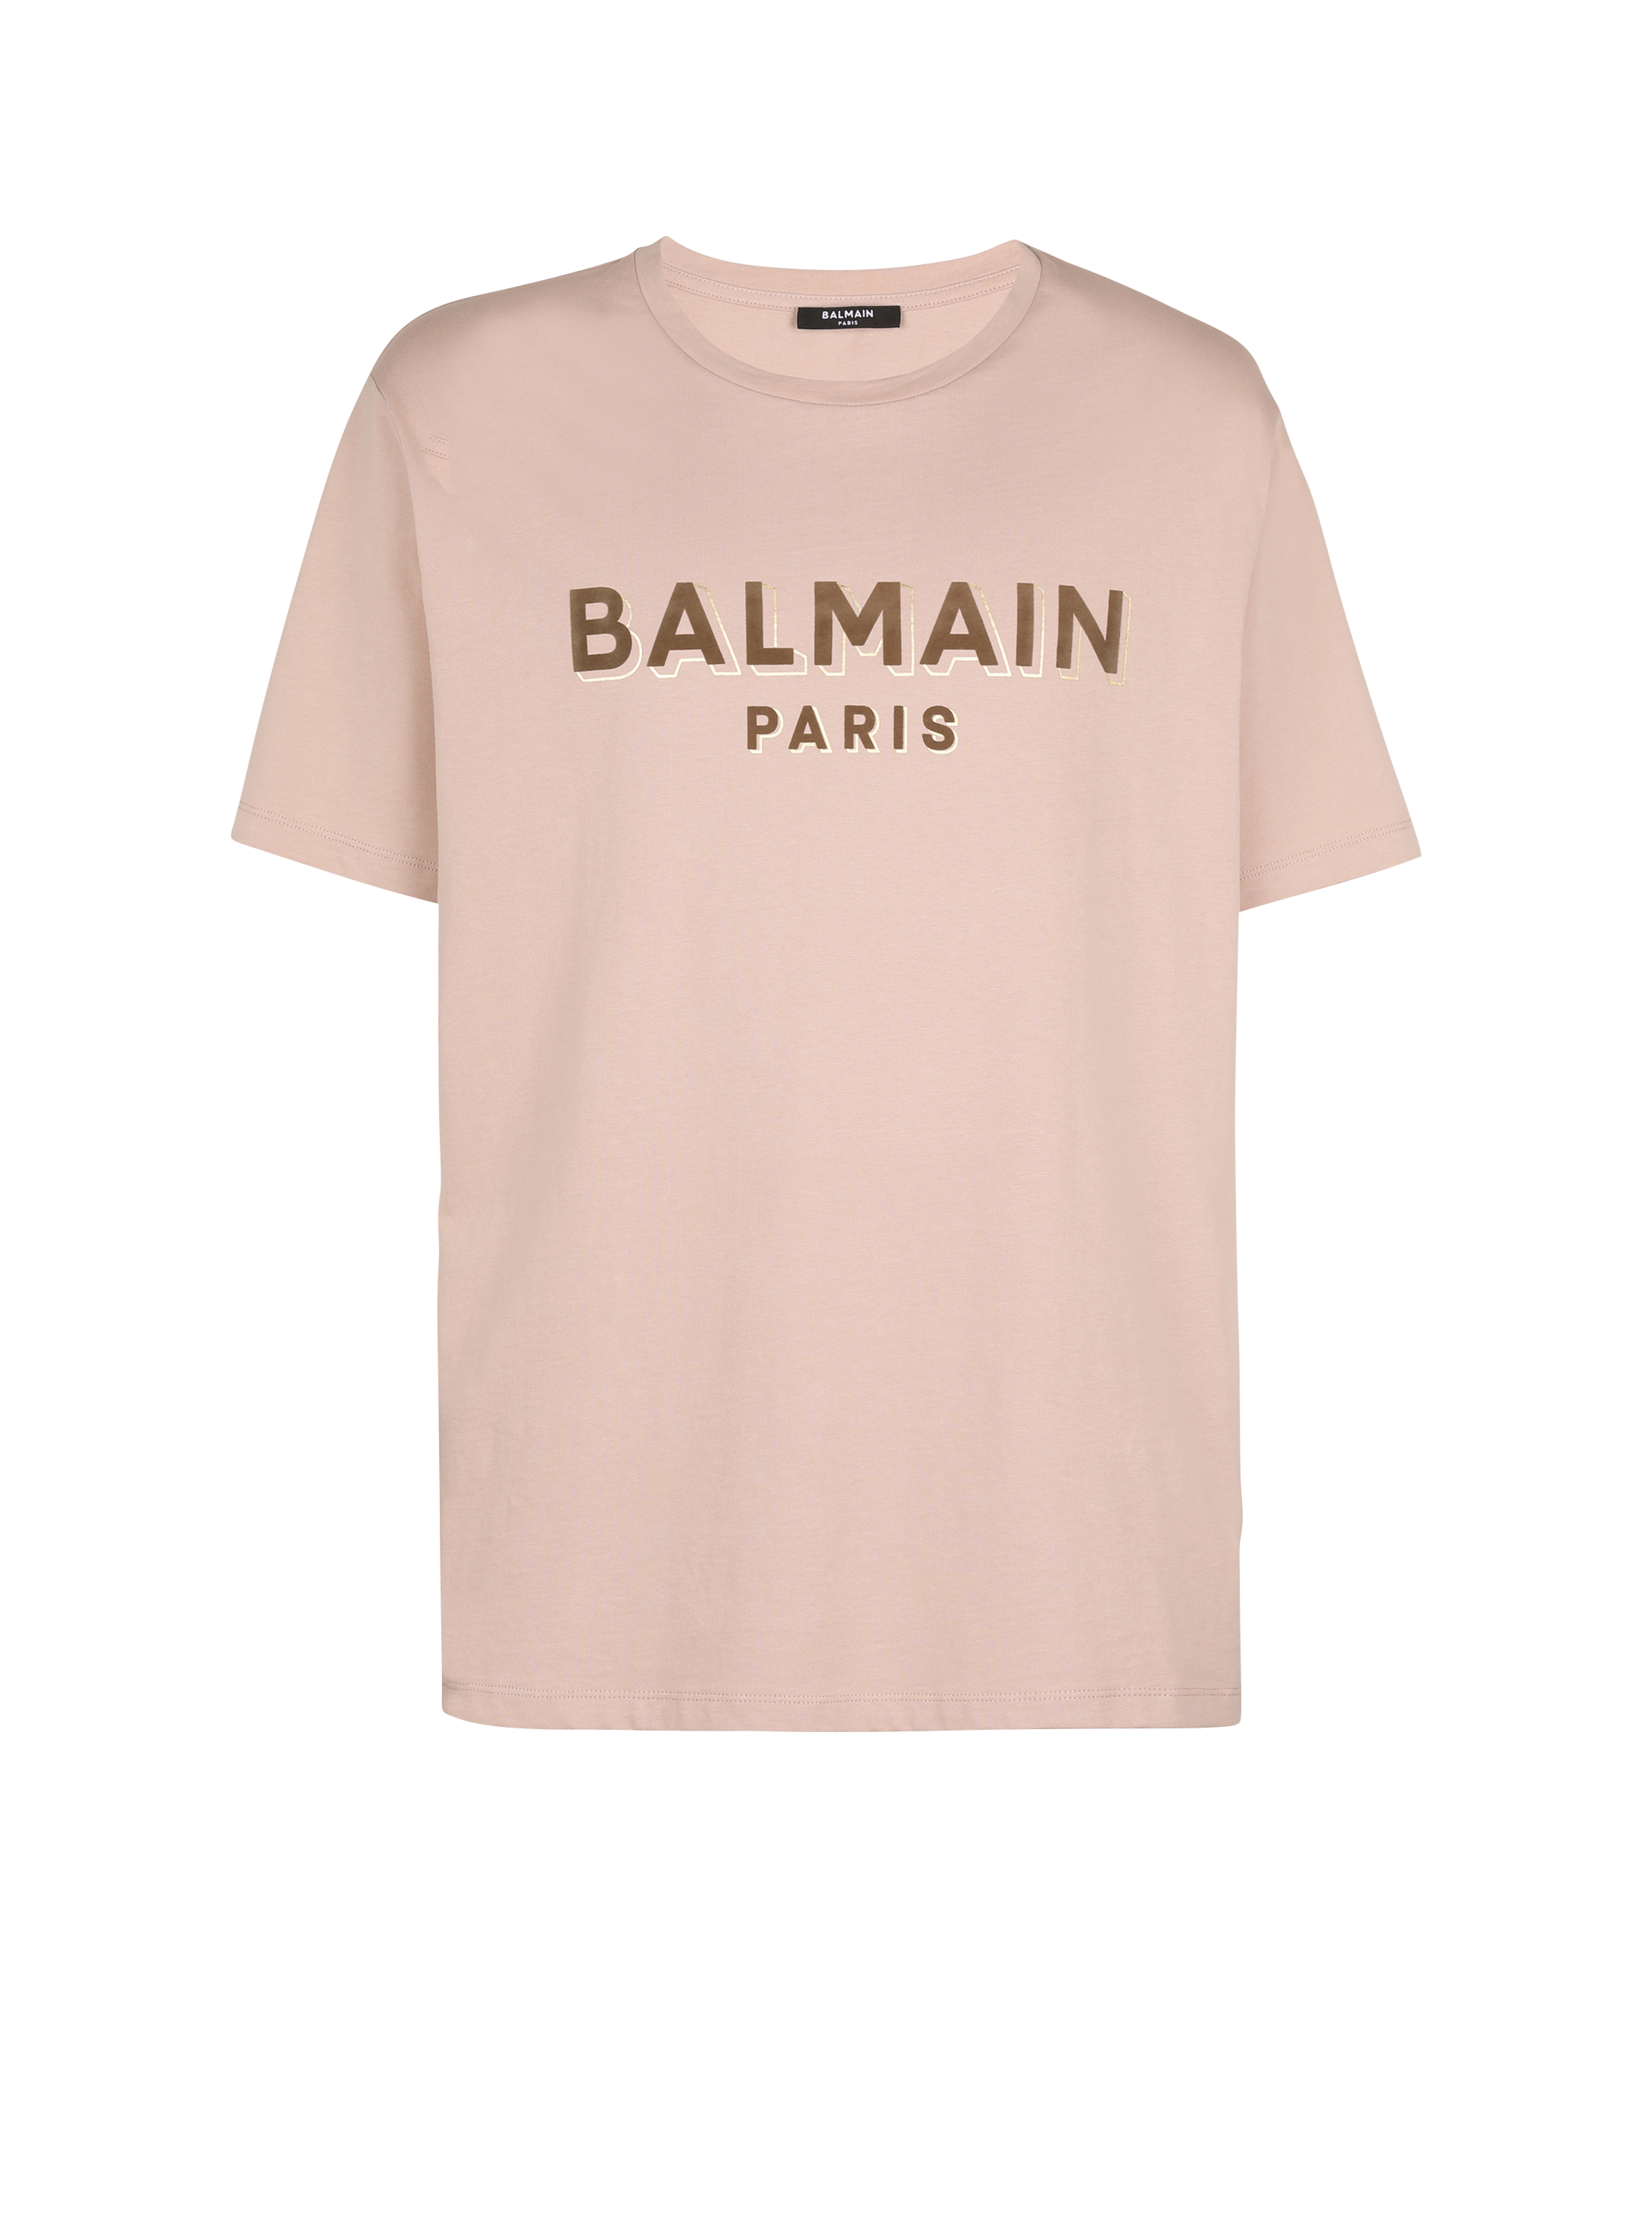 Camiseta oversize con logotipo de Balmain serigrafiado, marrón, hi-res